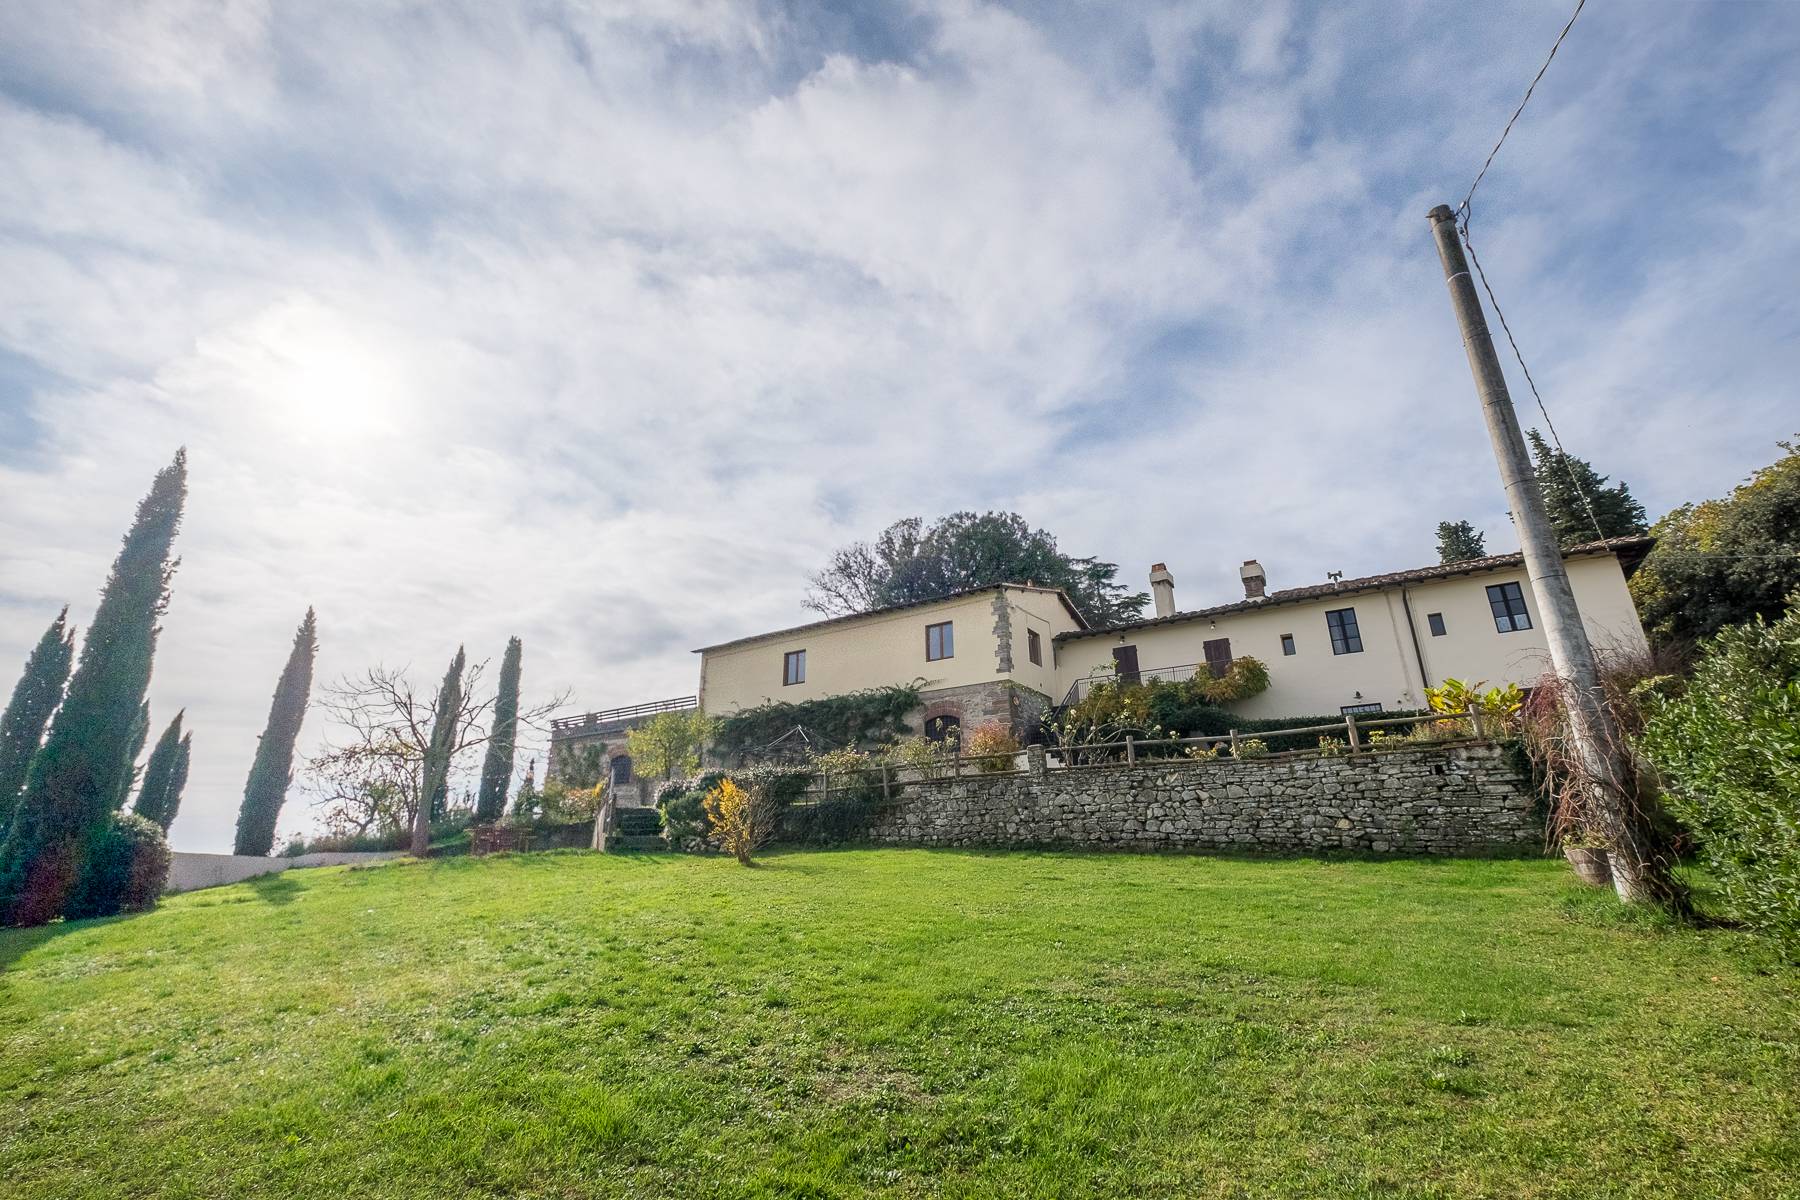 Villa in Vendita a Rignano Sull'Arno: 5 locali, 3000 mq - Foto 29